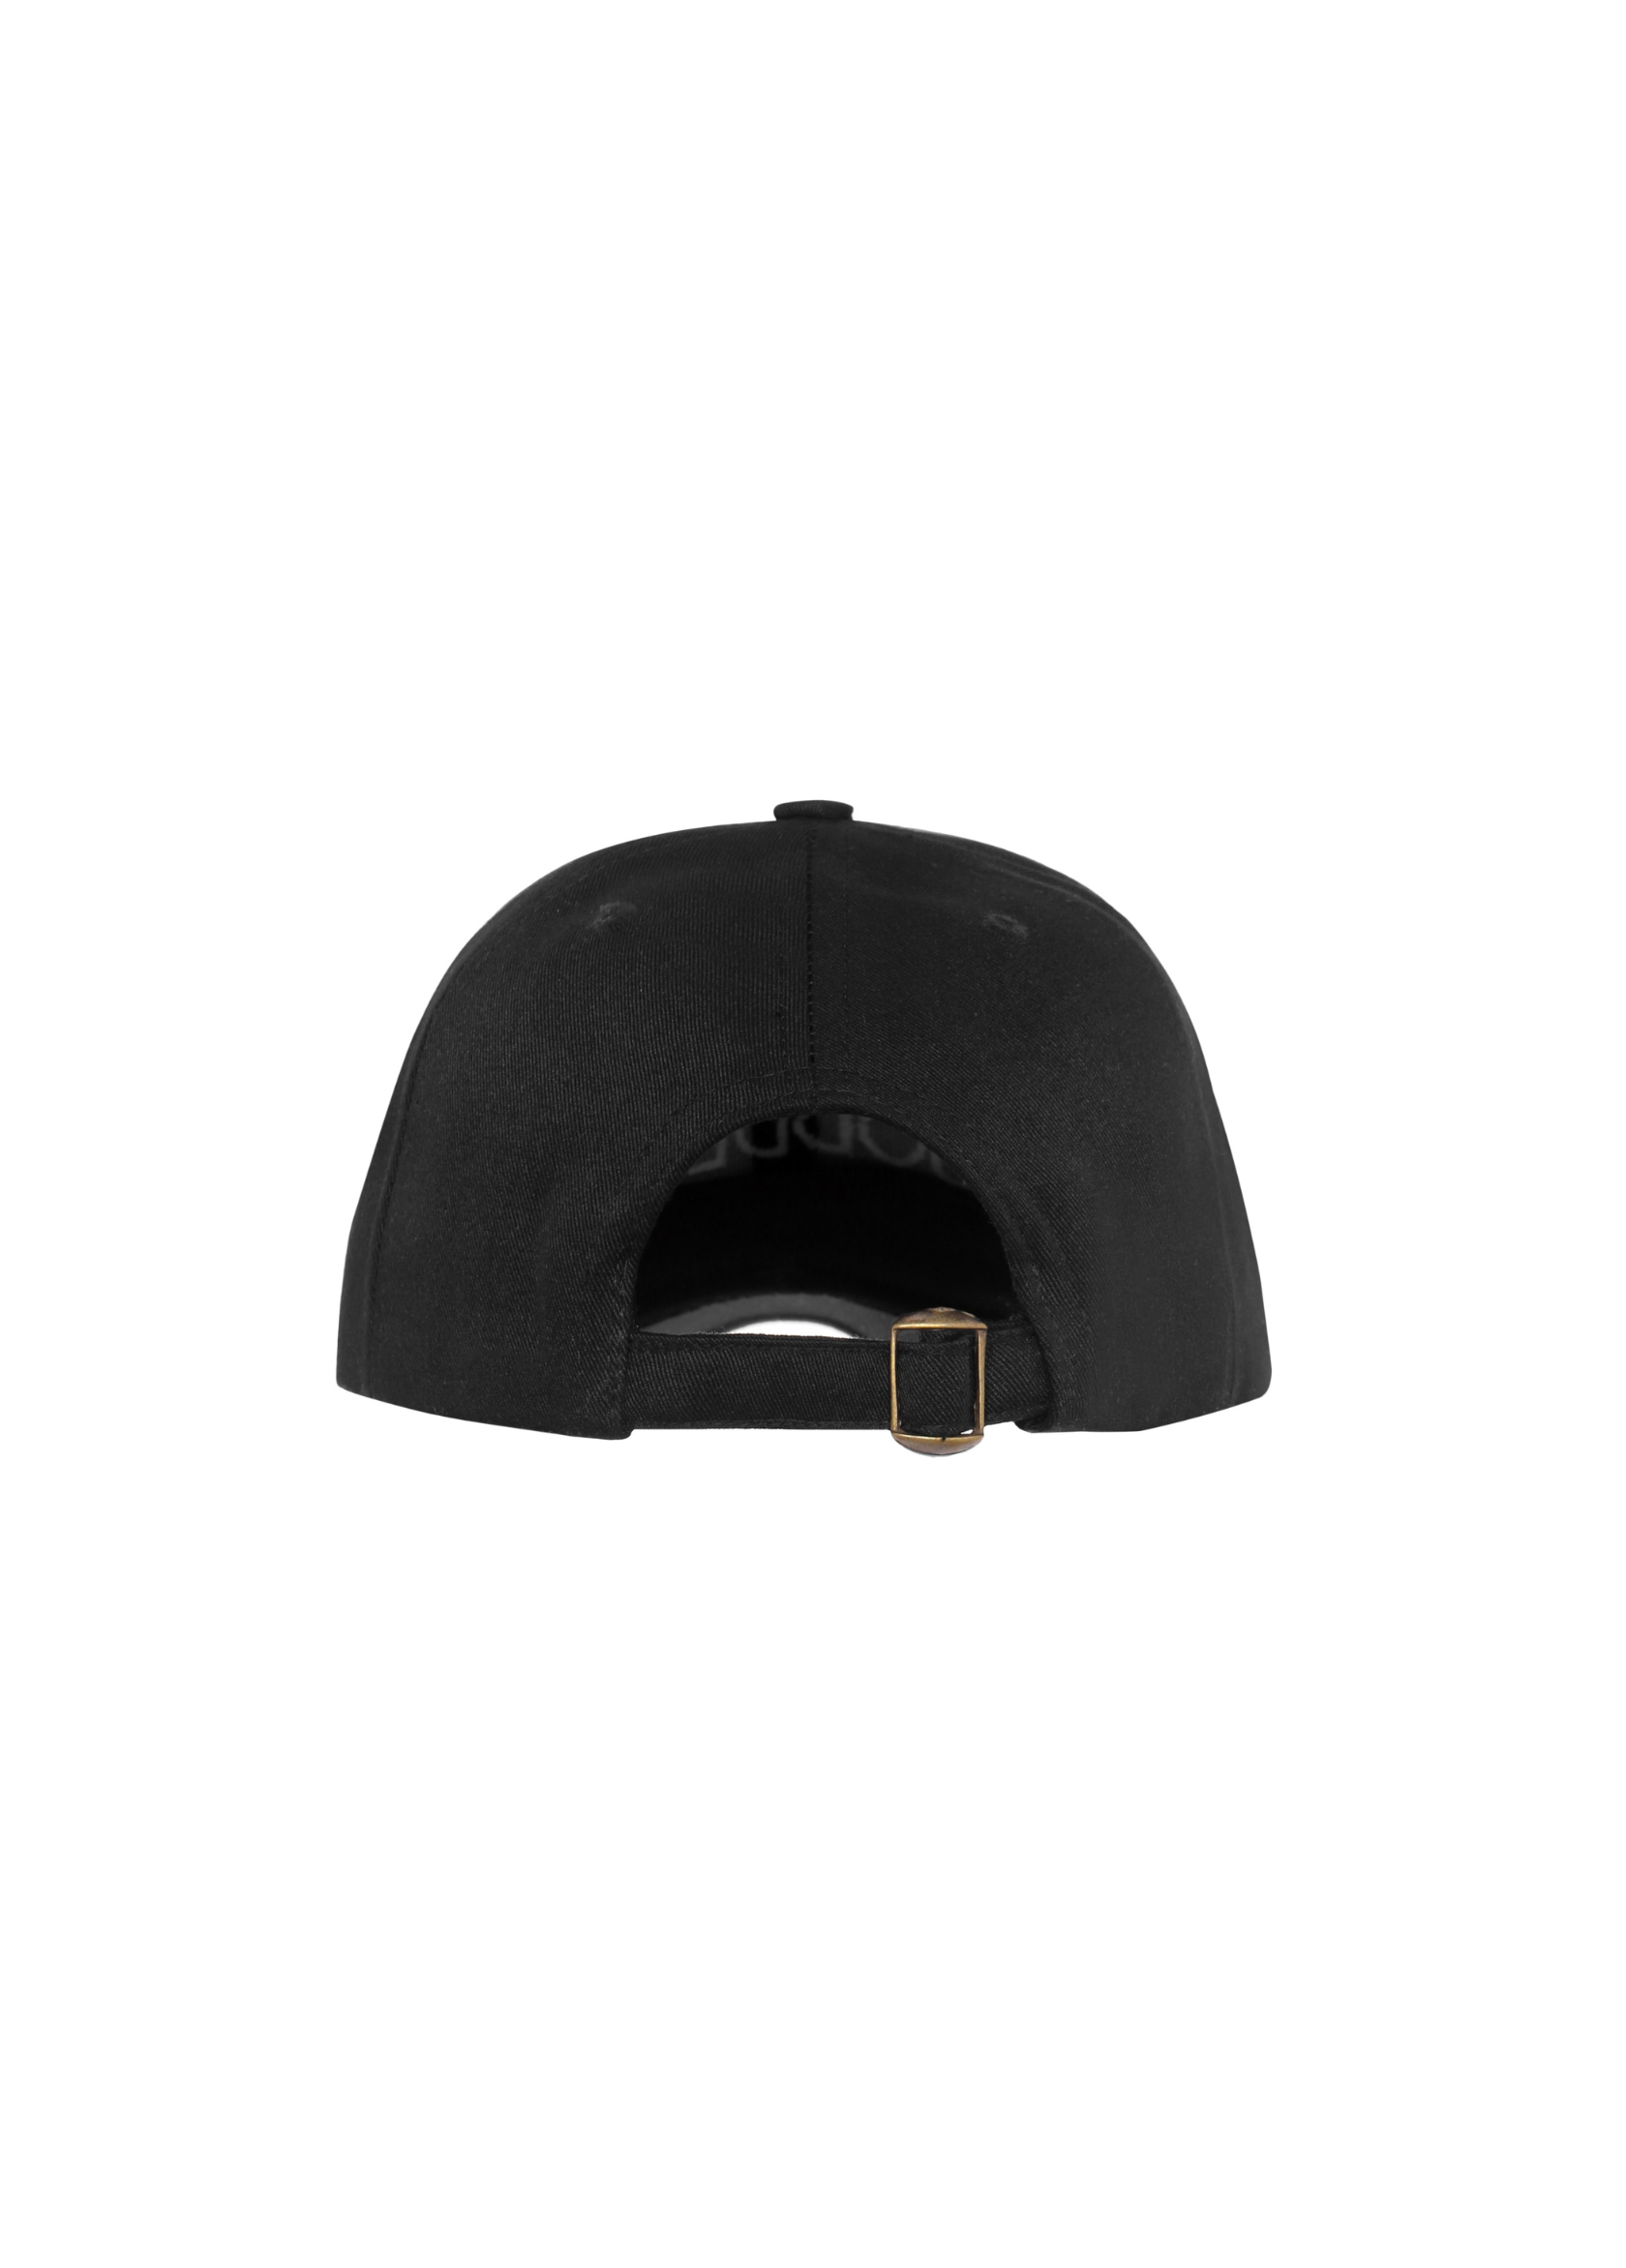 GODDESS BASEBALL CAP - BLACK